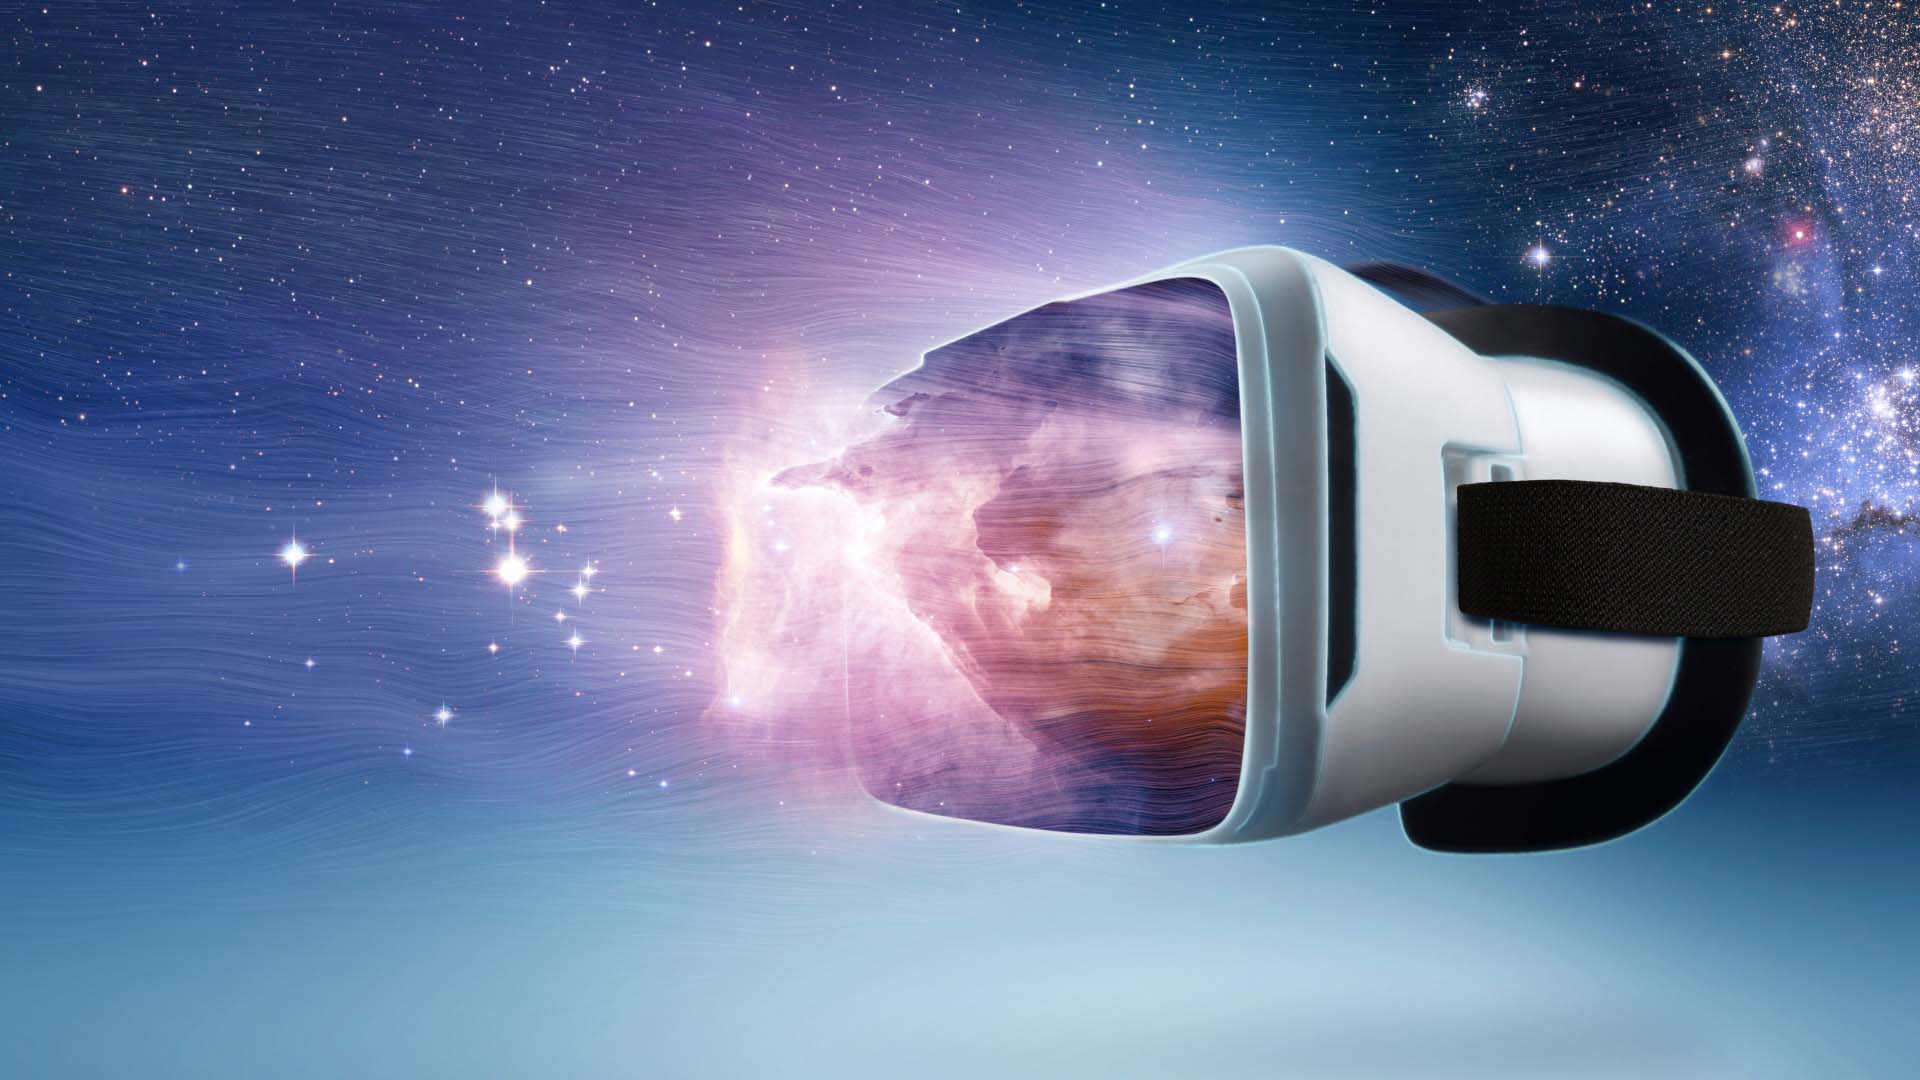 ألعاب الواقع الإفتراضي مستقبل صناعة الألعاب أم مجرد تقنية فاشلة؟